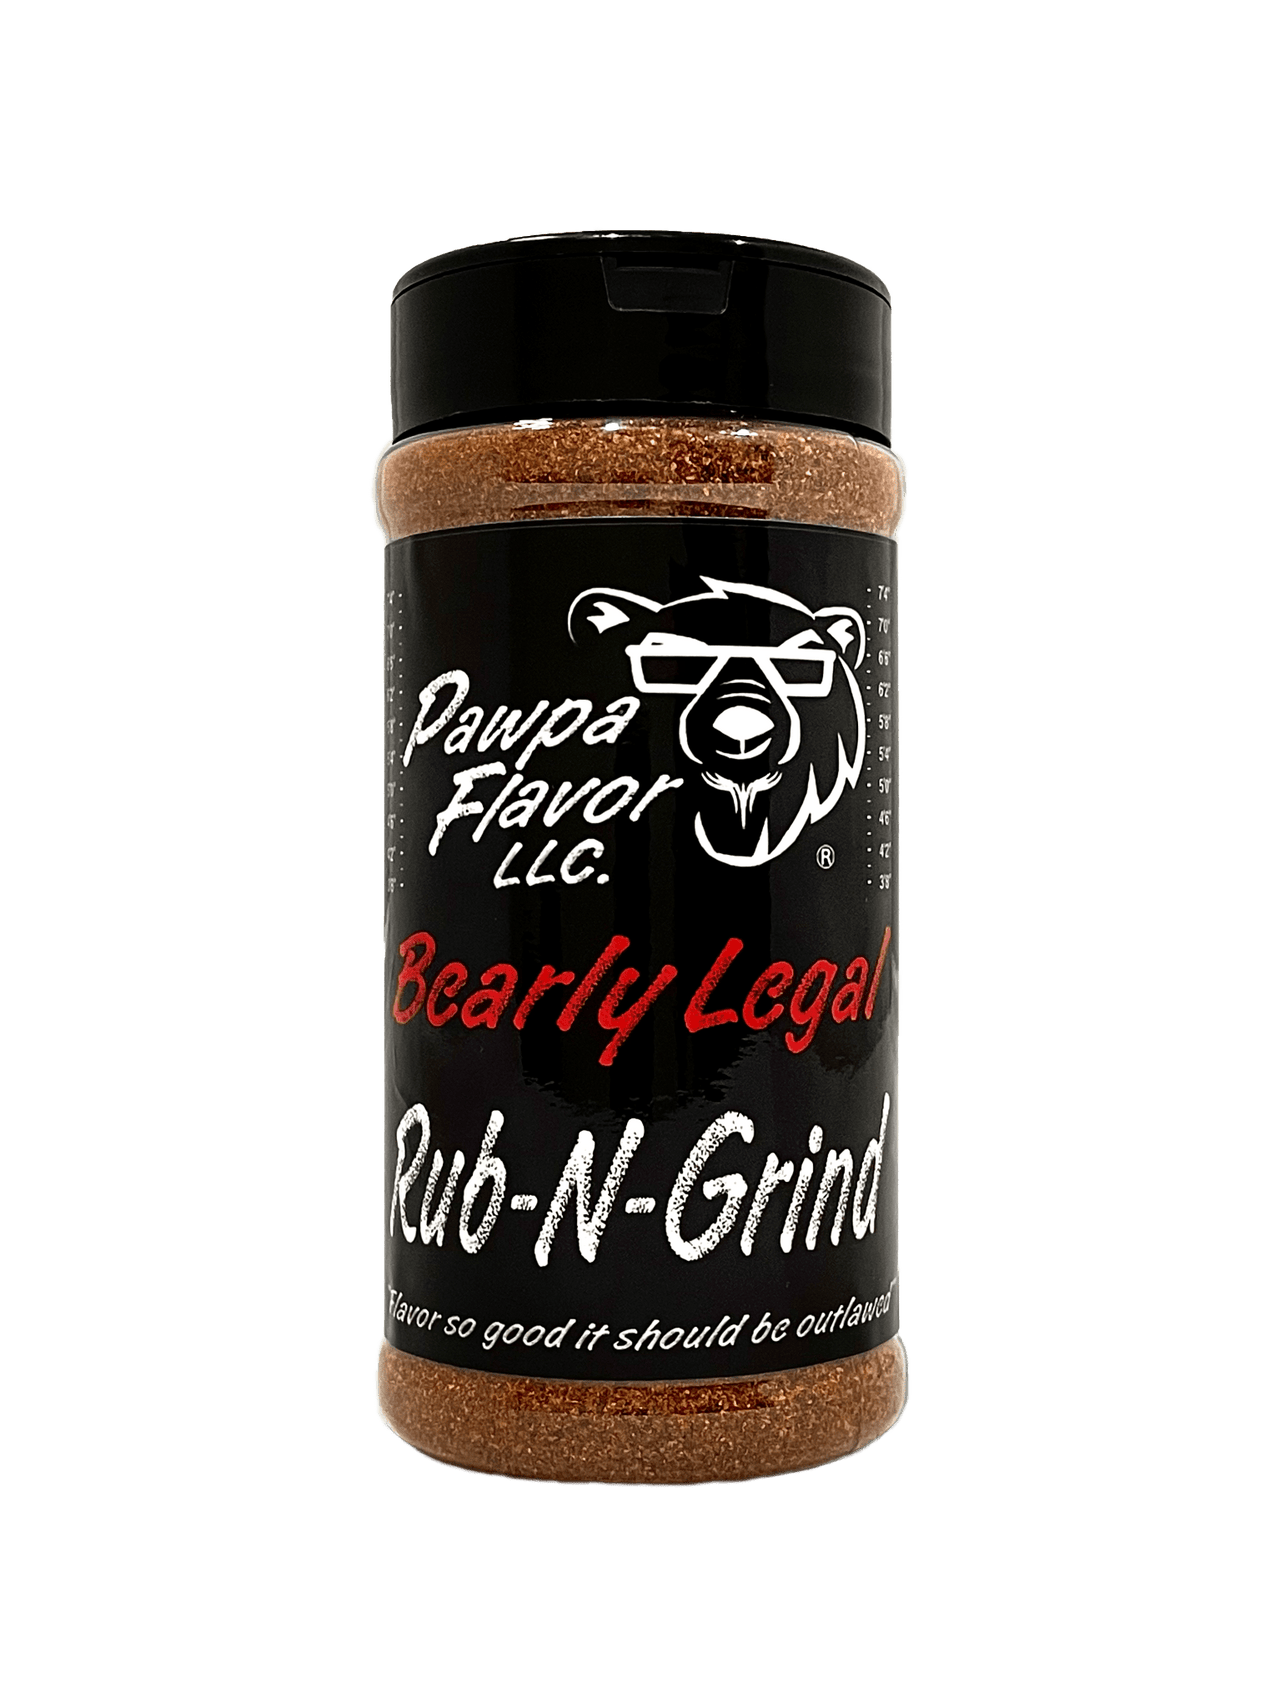 Pawpa Flavor Seasonings and Rubs Rub-N-Grind 10oz